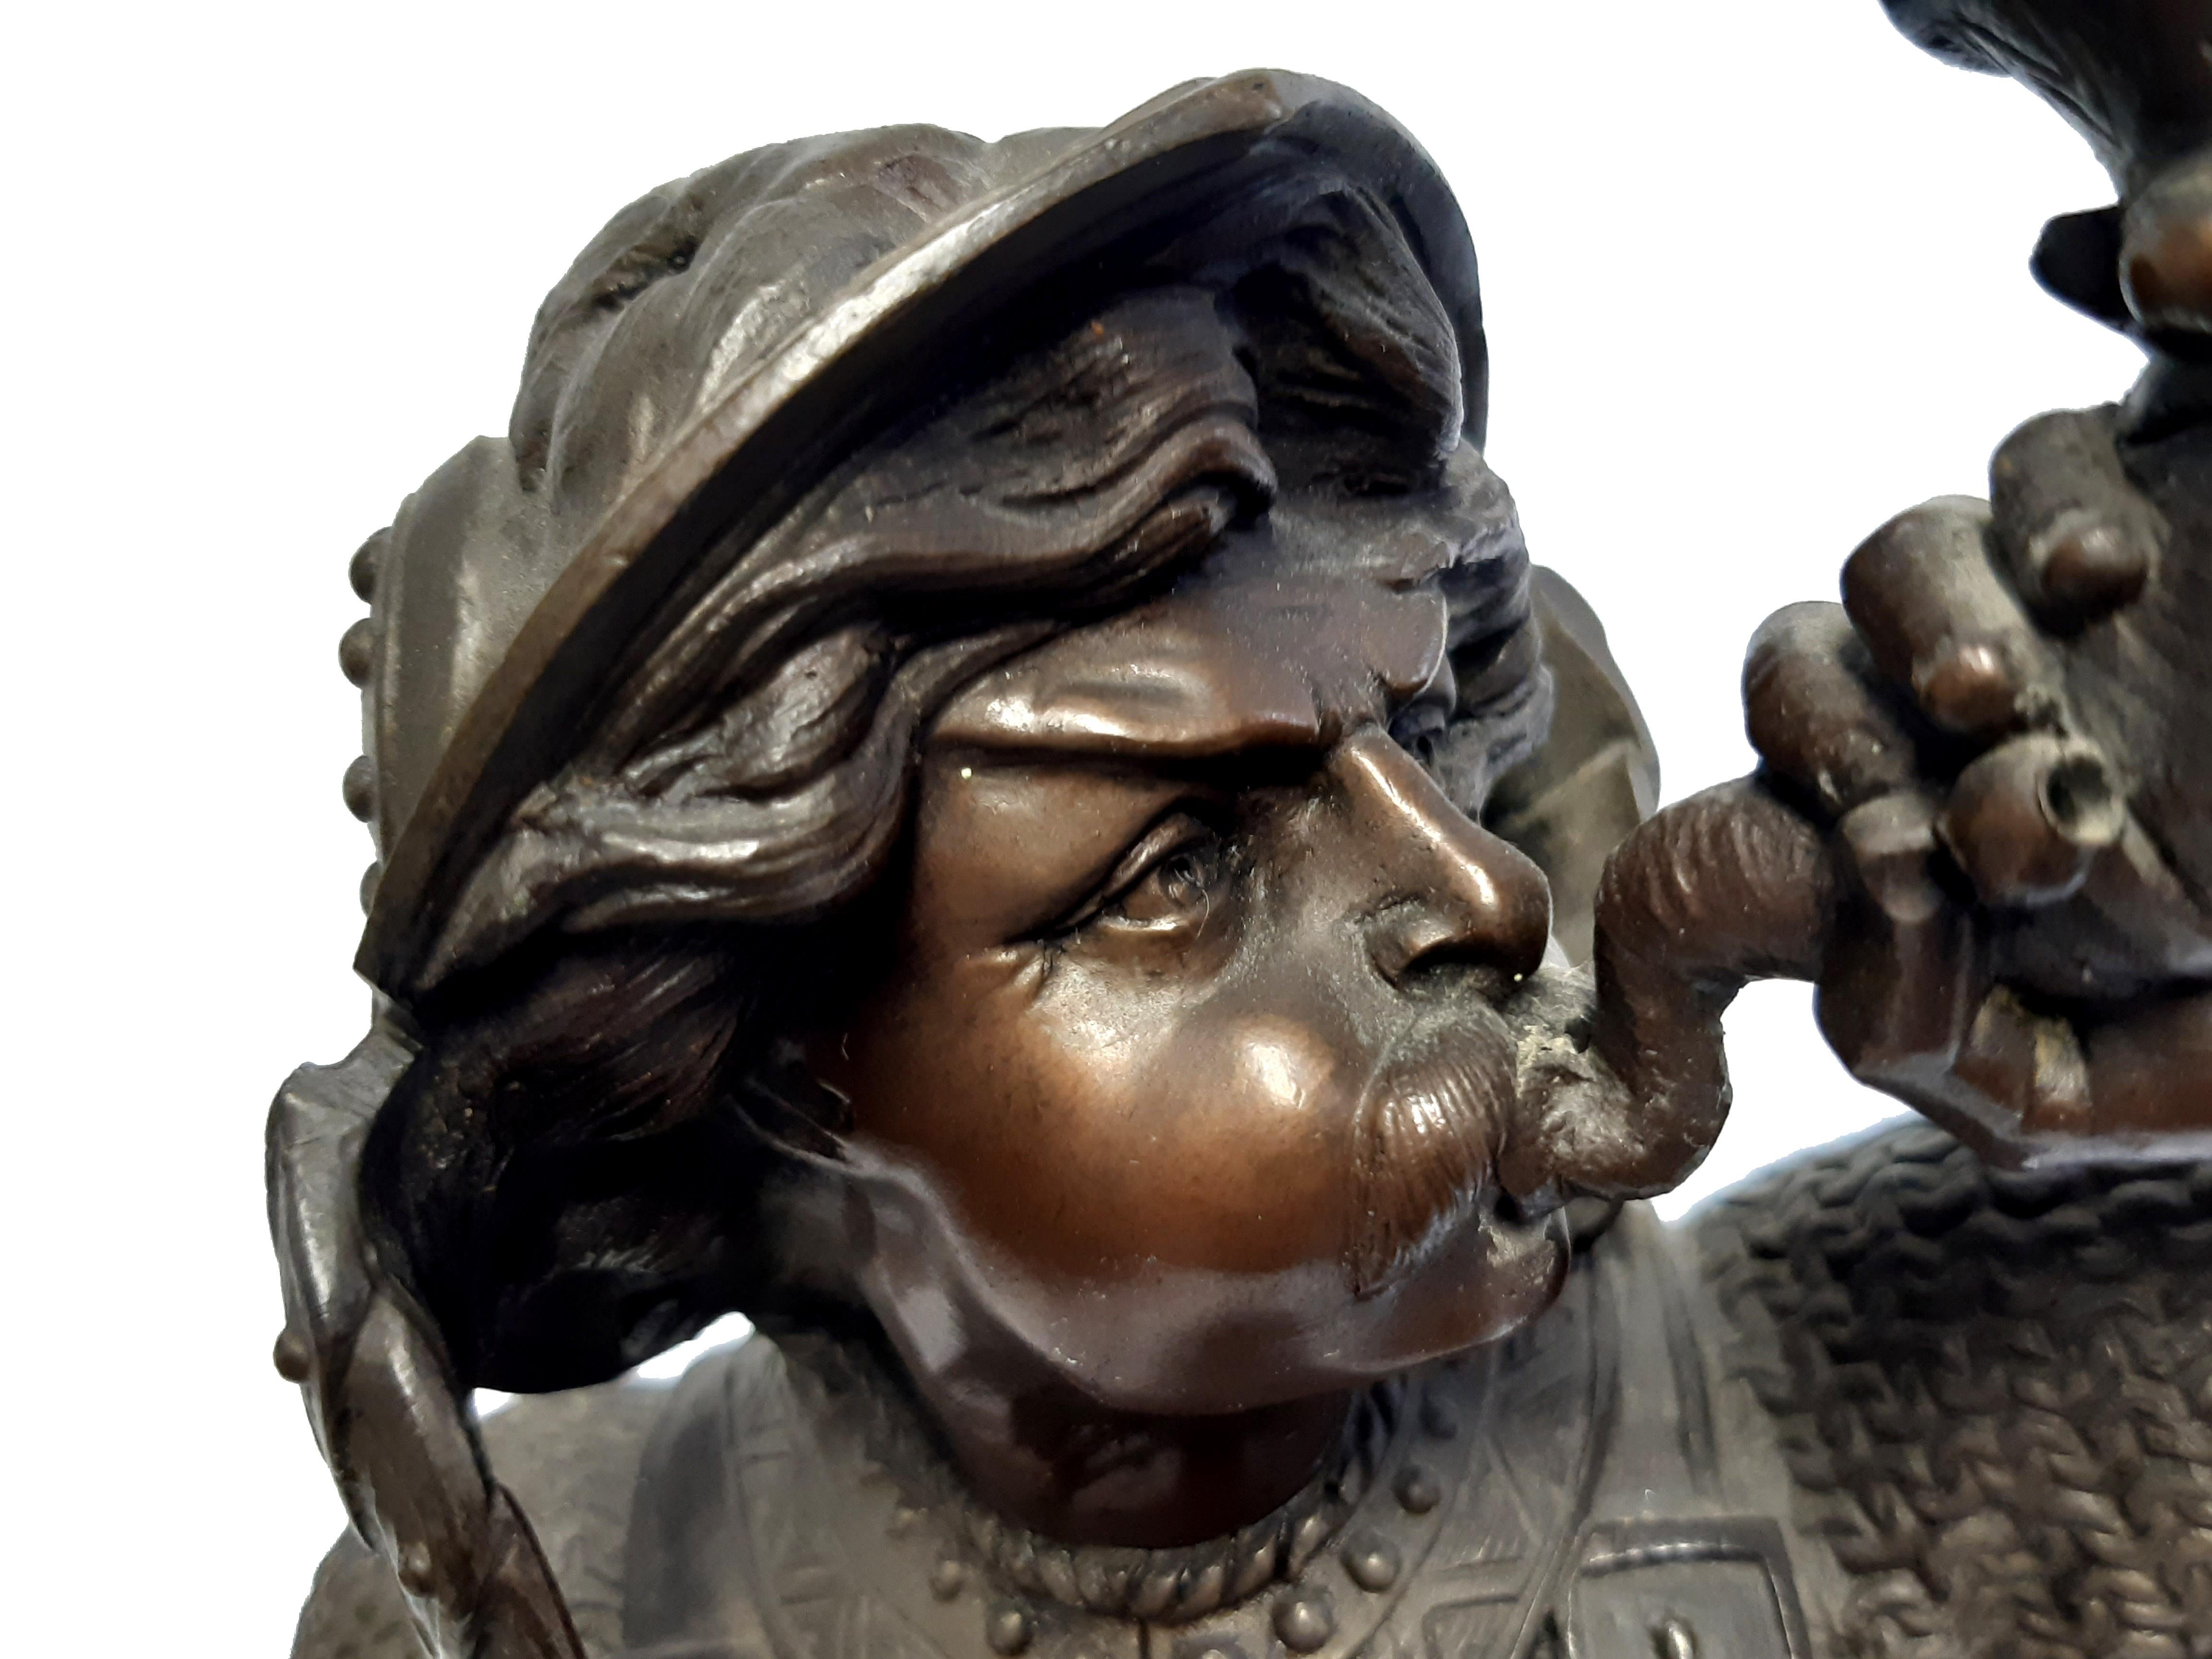 Sehr detailreich gearbeitete, polychrom patinierte Historismus-Bronzefigur eines Ritters um 1900.
Nicht signiert.